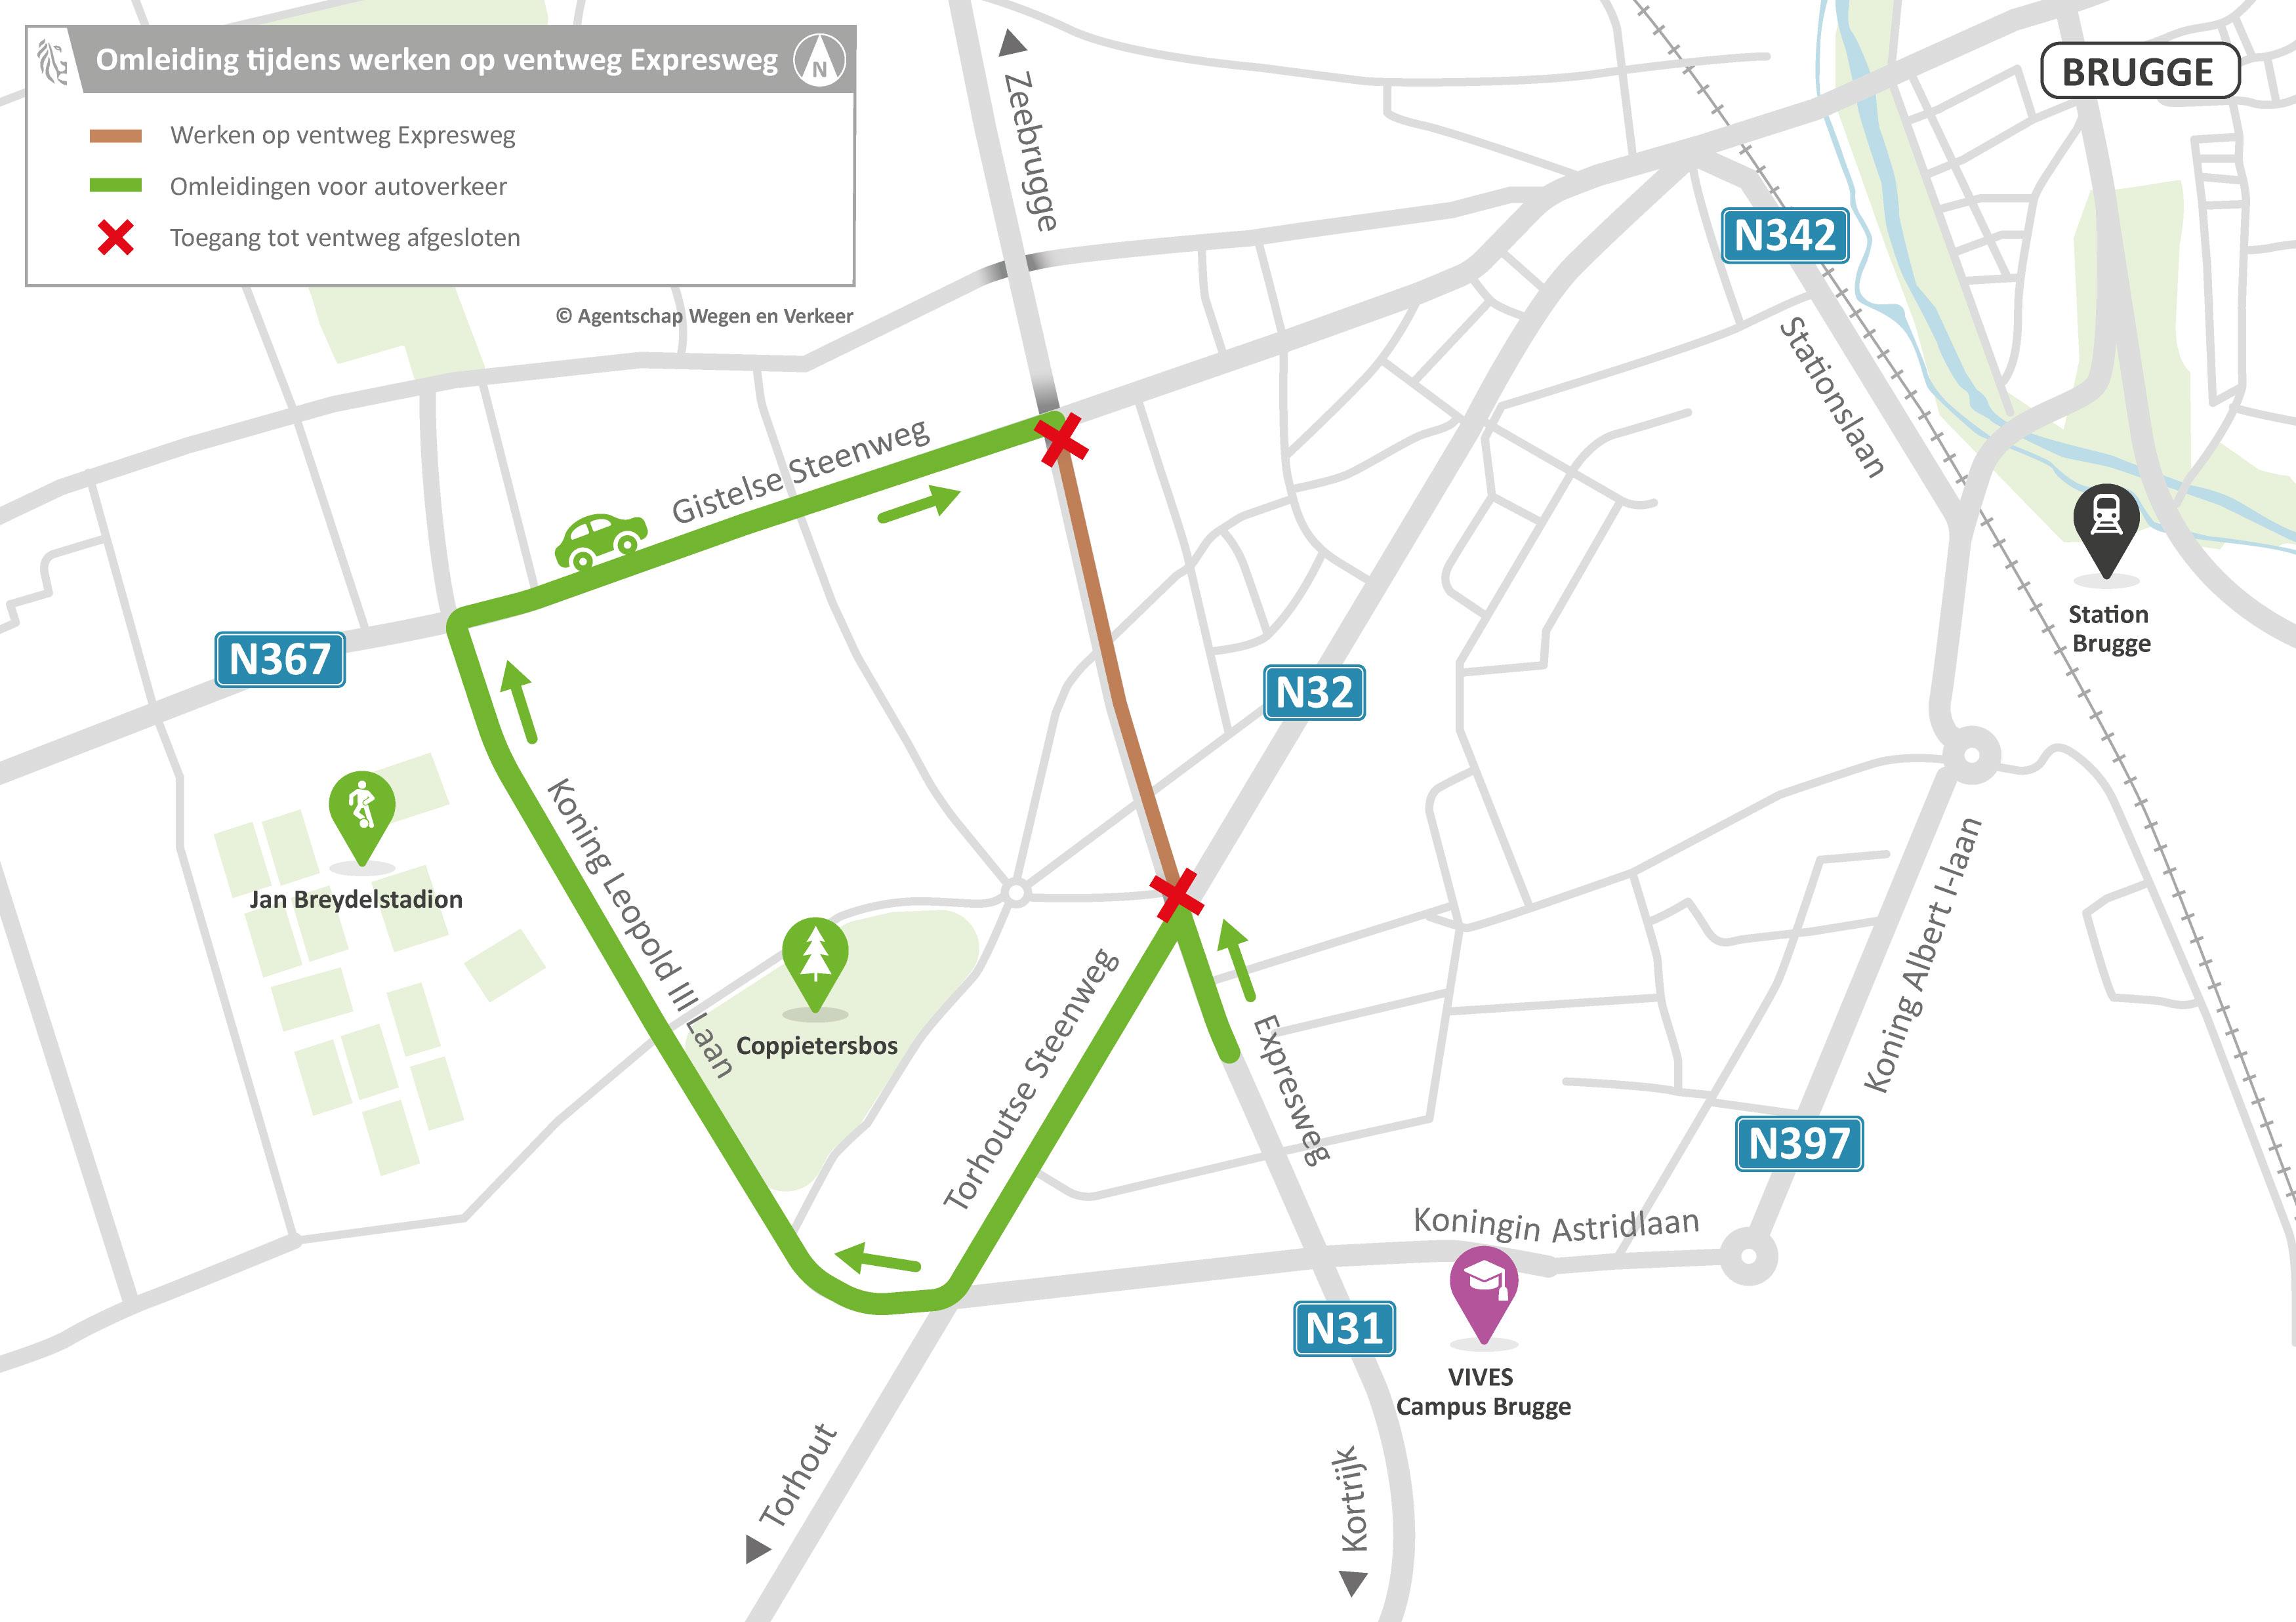 2022-04-27_AWV_WVL_N31-Brugge_Omleidingskaarten_kaart-2.jpg